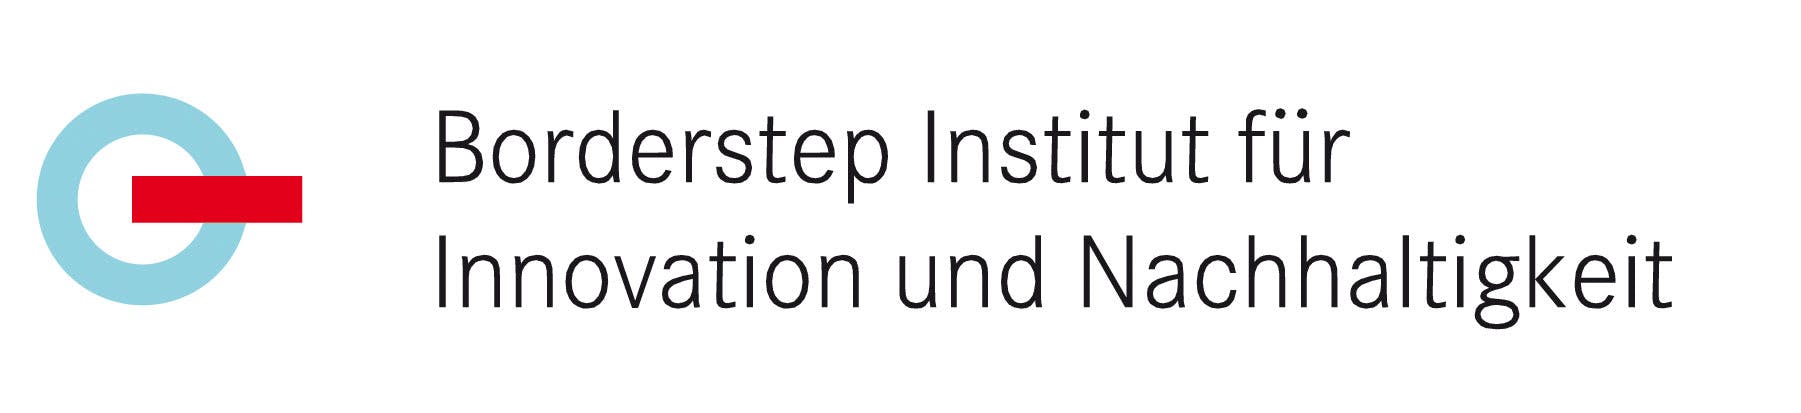 Borderstep Institut logo